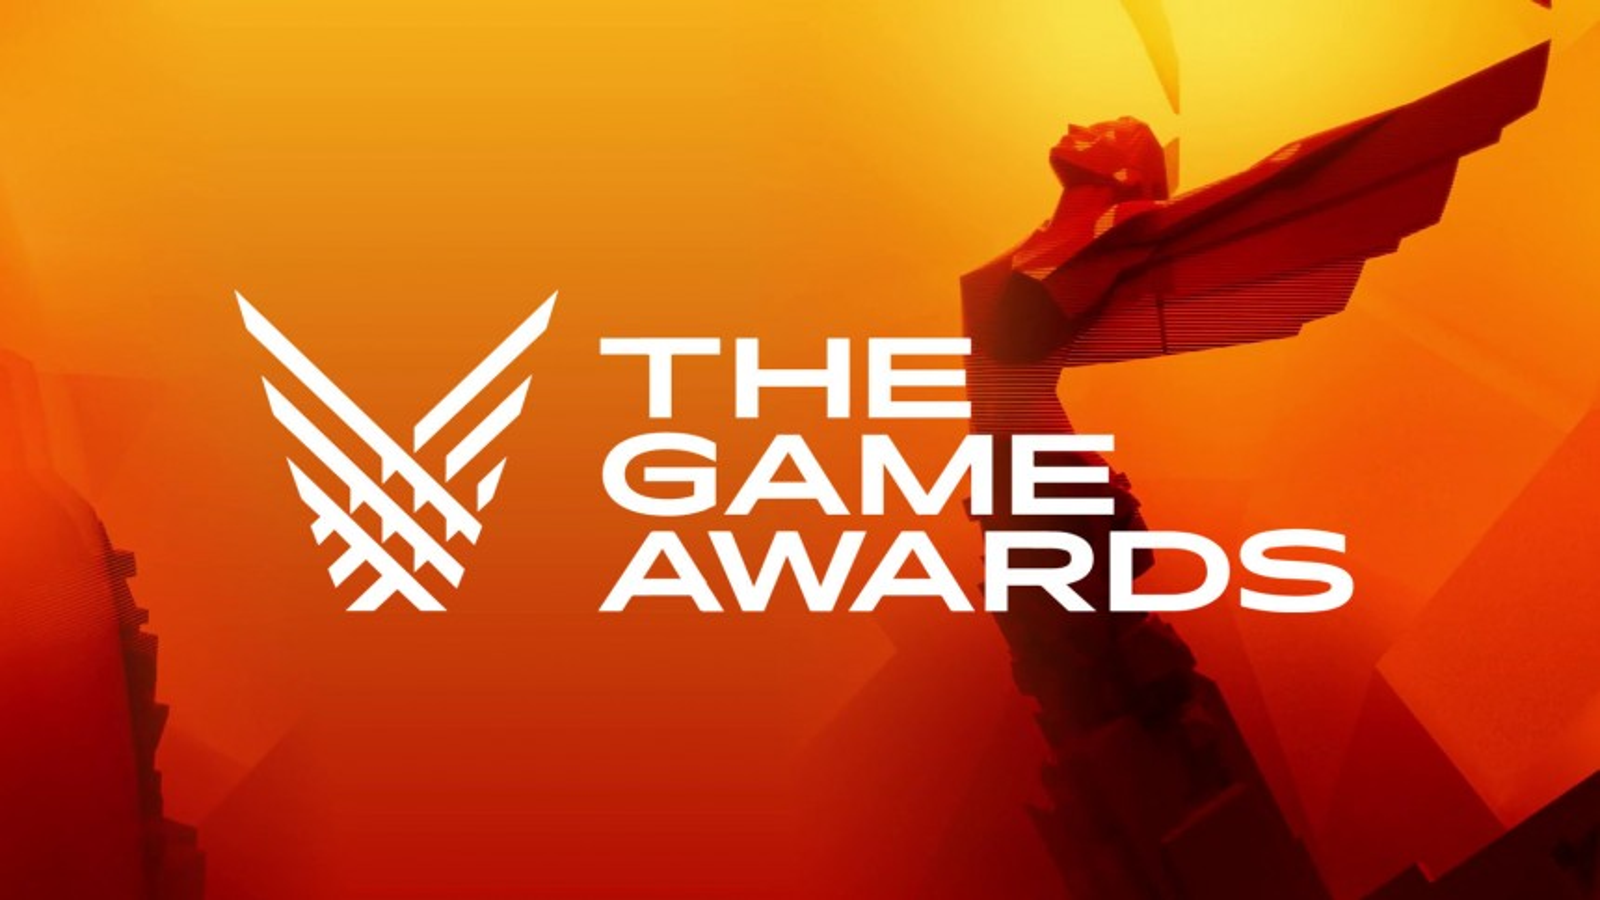 The Game Awards: Foram revelados os nomeados